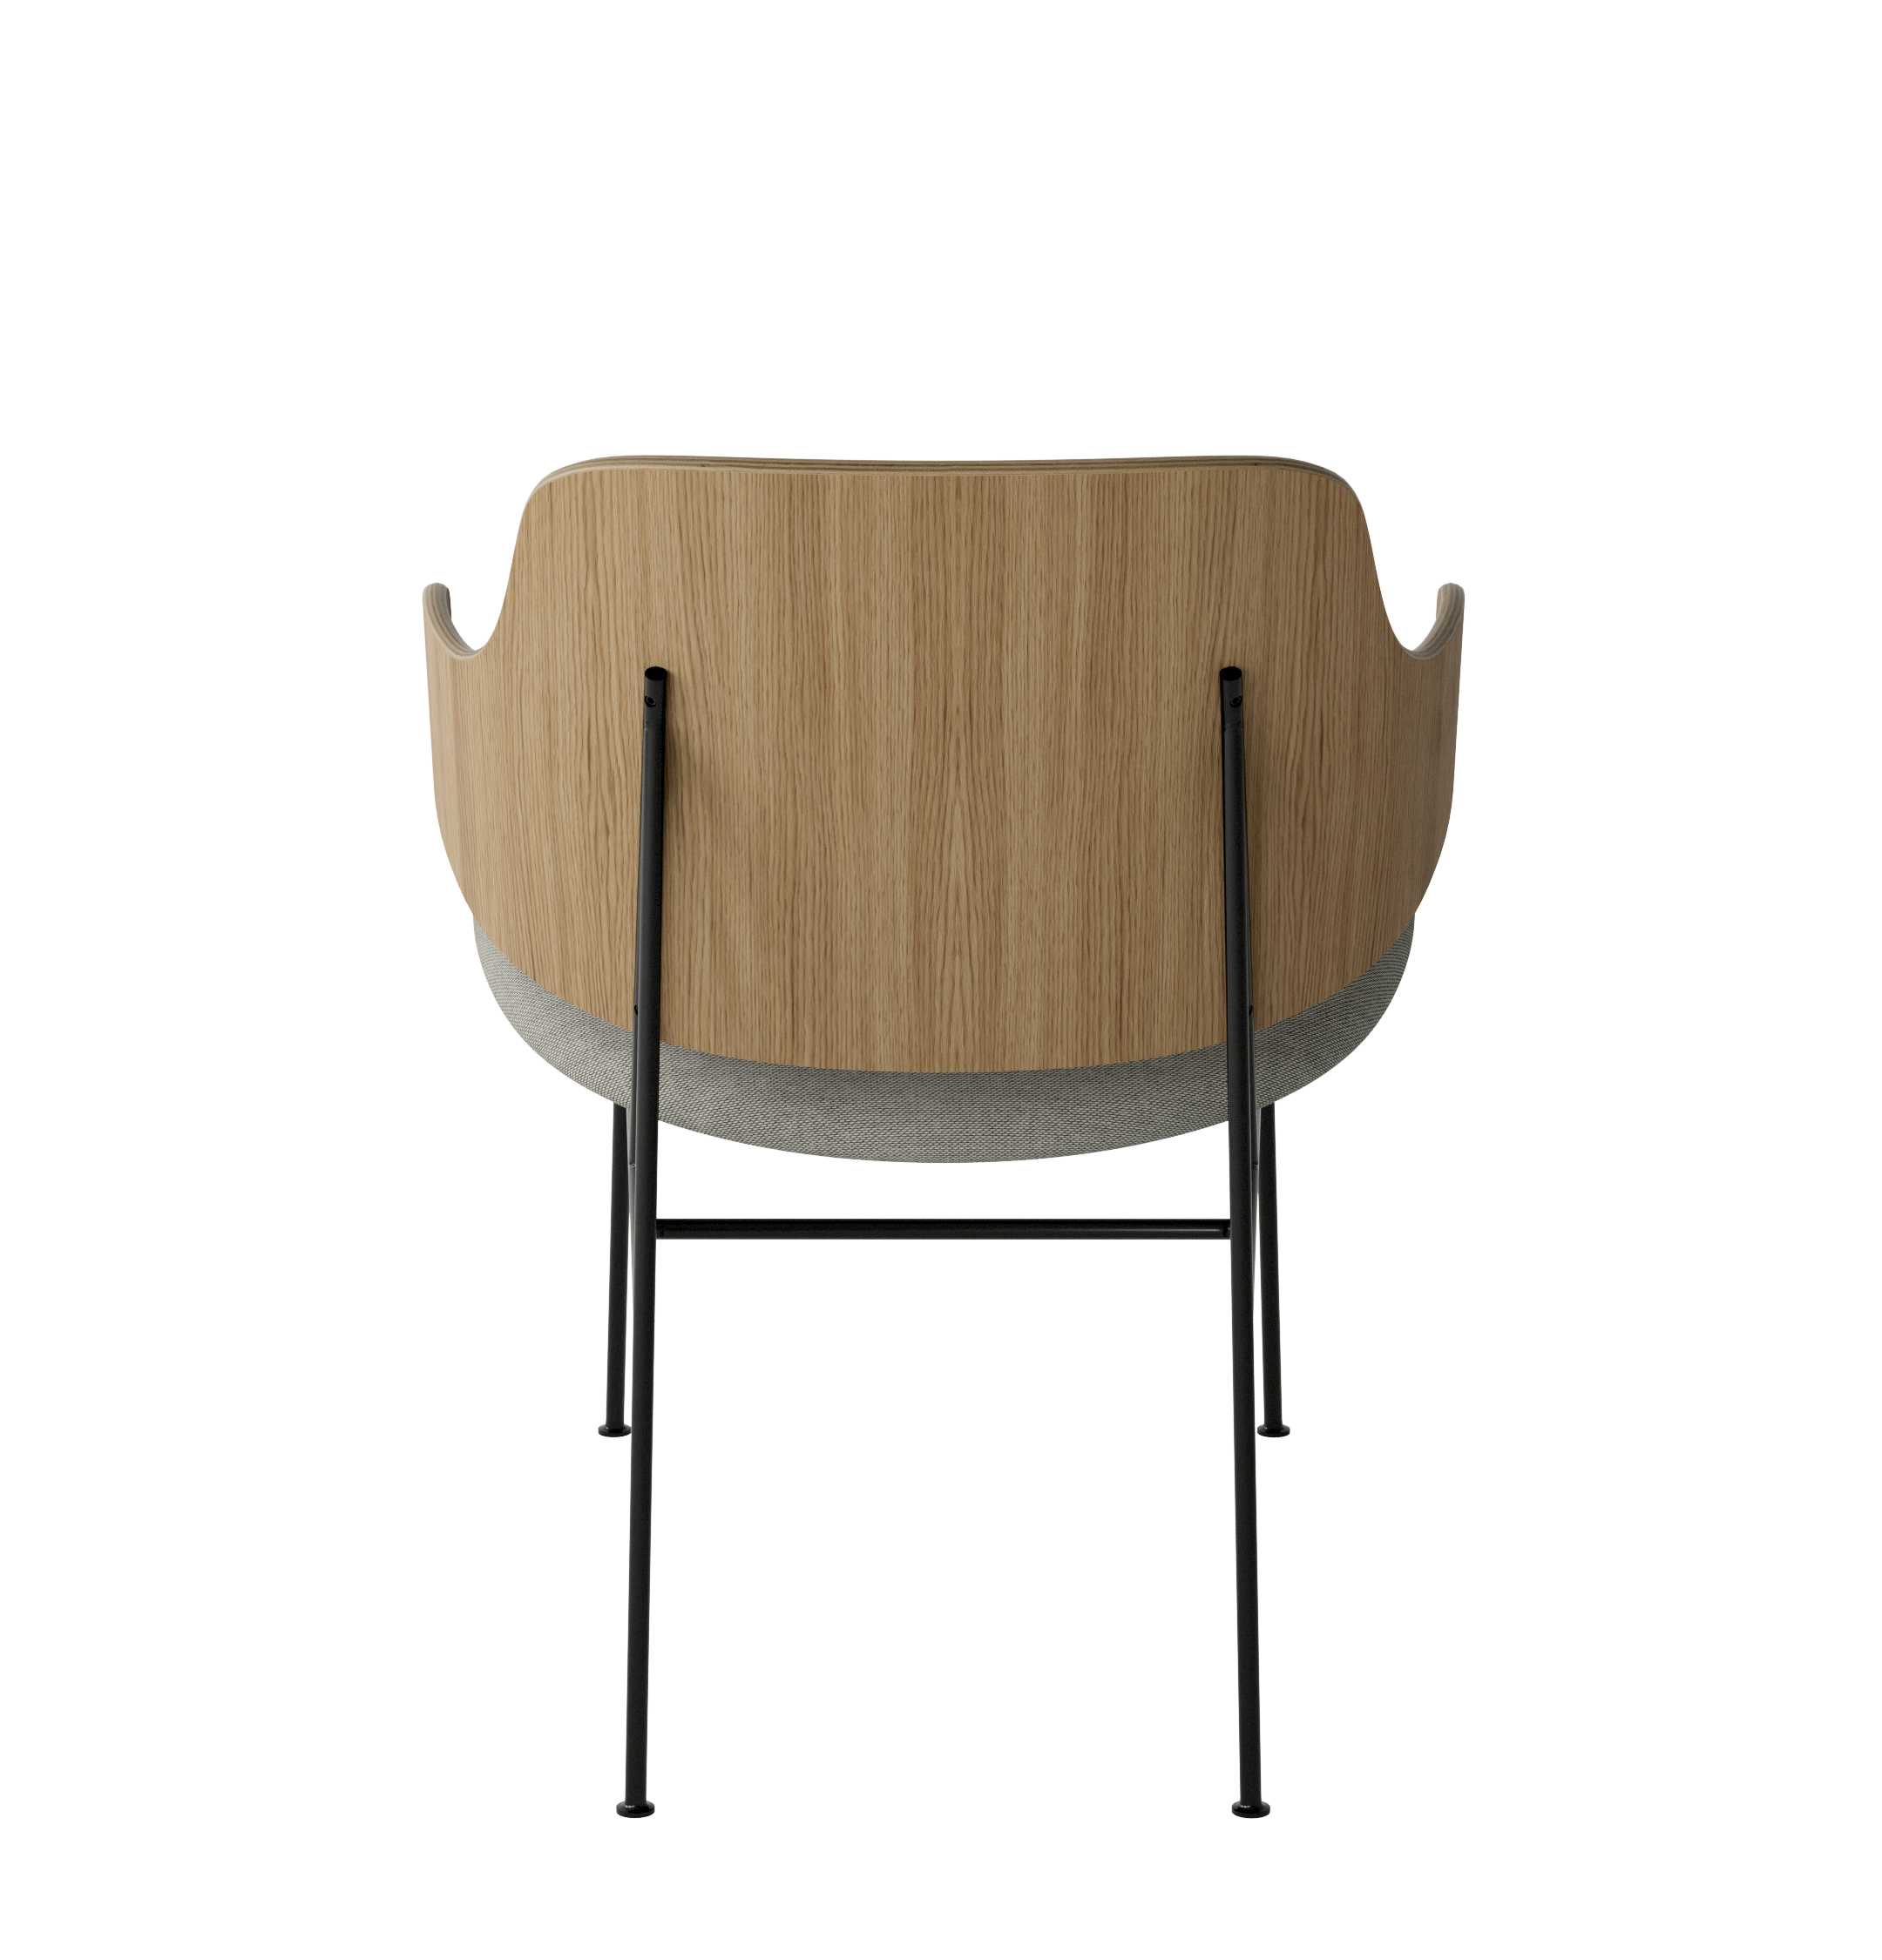 Menu - The Penguin fauteuil, zwart stalen frame, naturel eiken rugleuning, 0218 (Beige)